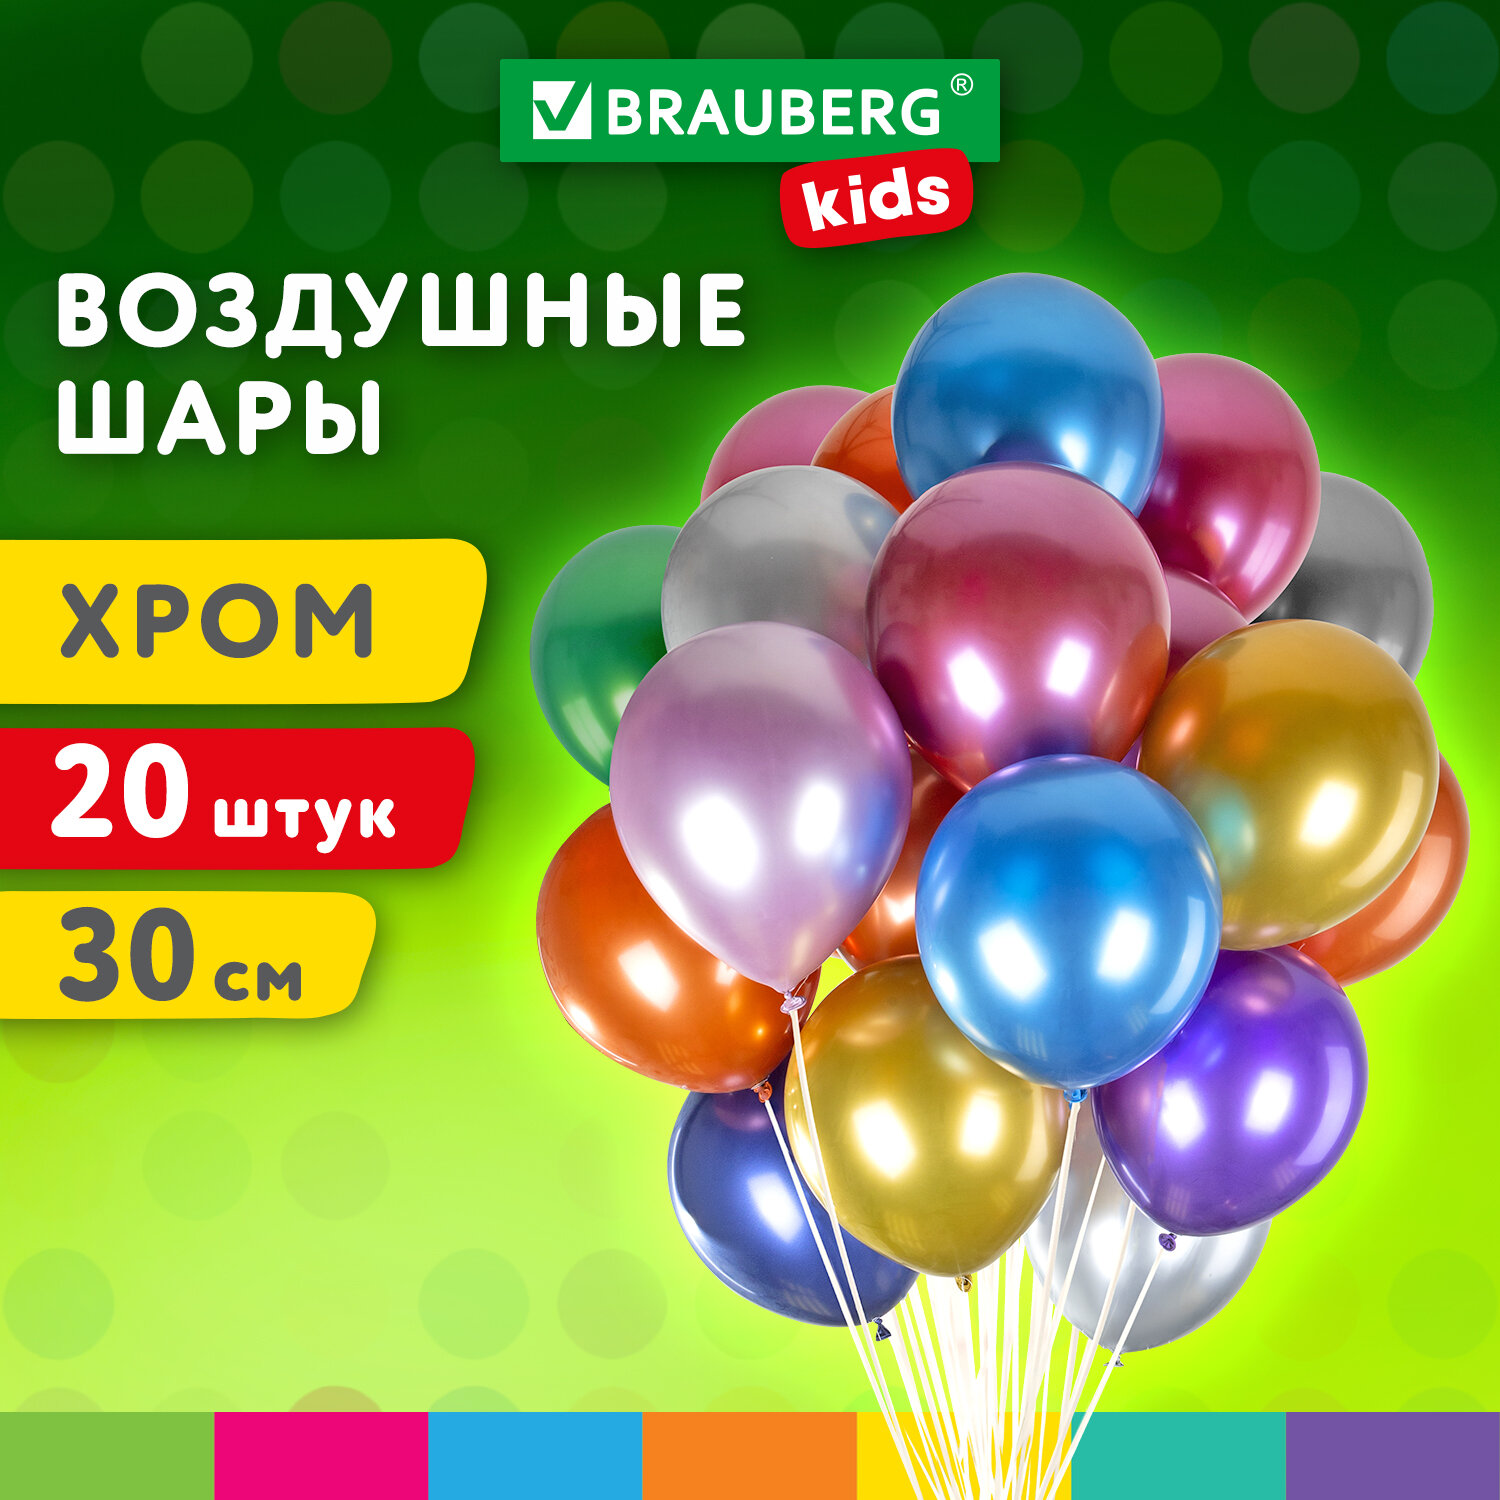 Шарики воздушные Brauberg Kids 591887 набор на день рождения, для фотозоны, 30 см, 20 штук воздушные шары для фотозоны